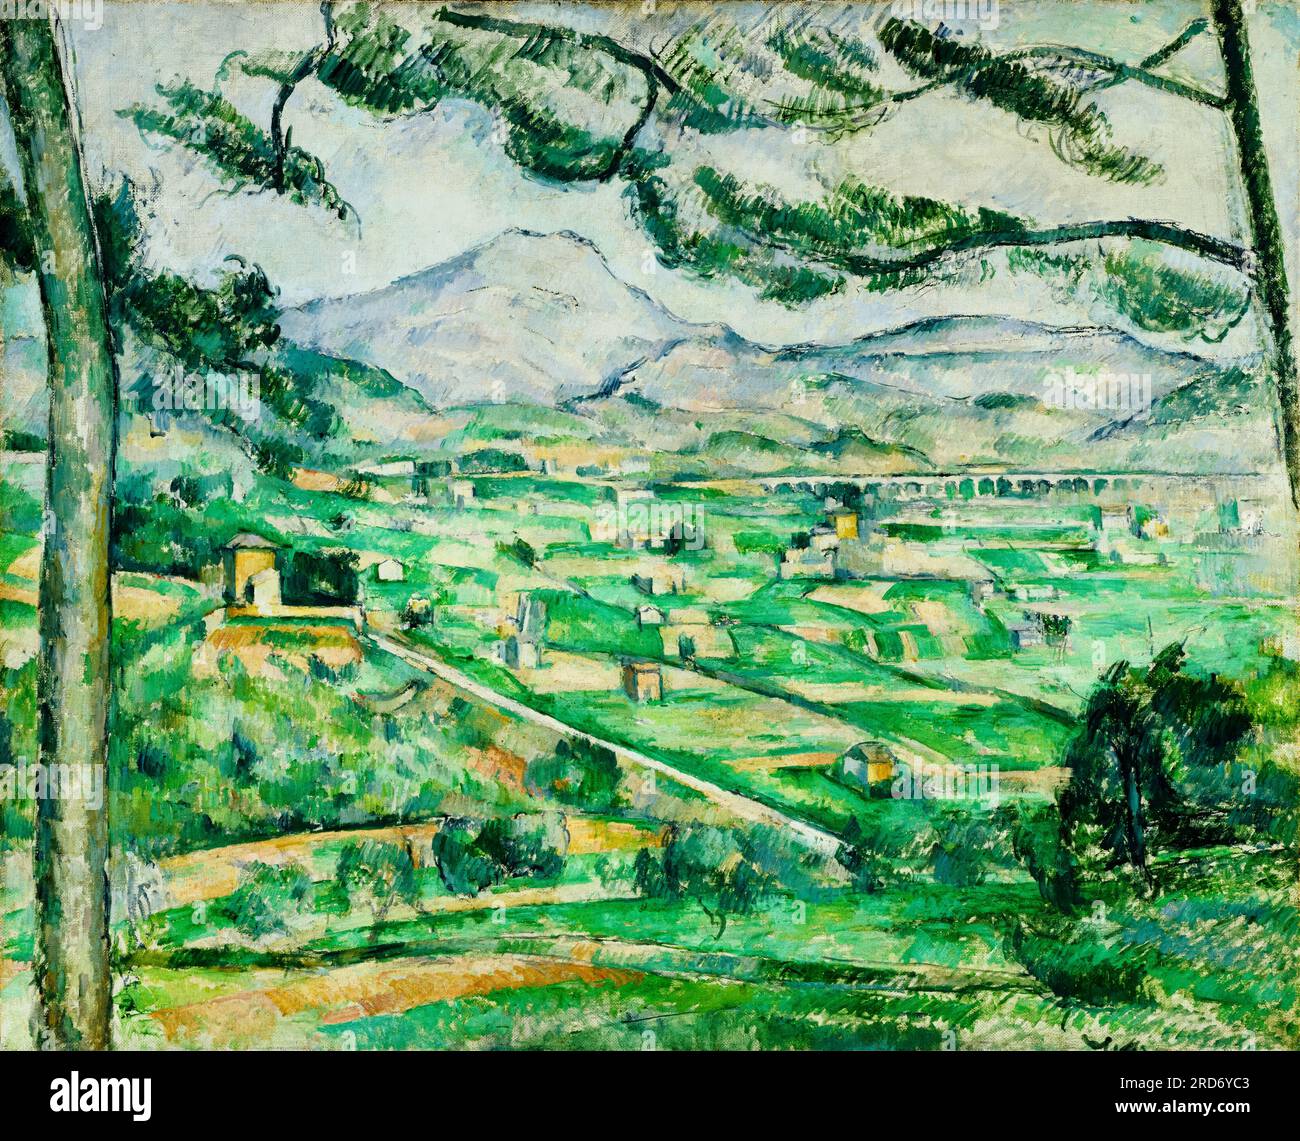 Paul Cézanne, Mont Sainte-victoire, peinture de paysage à l'huile sur toile, 1886-1887 Banque D'Images